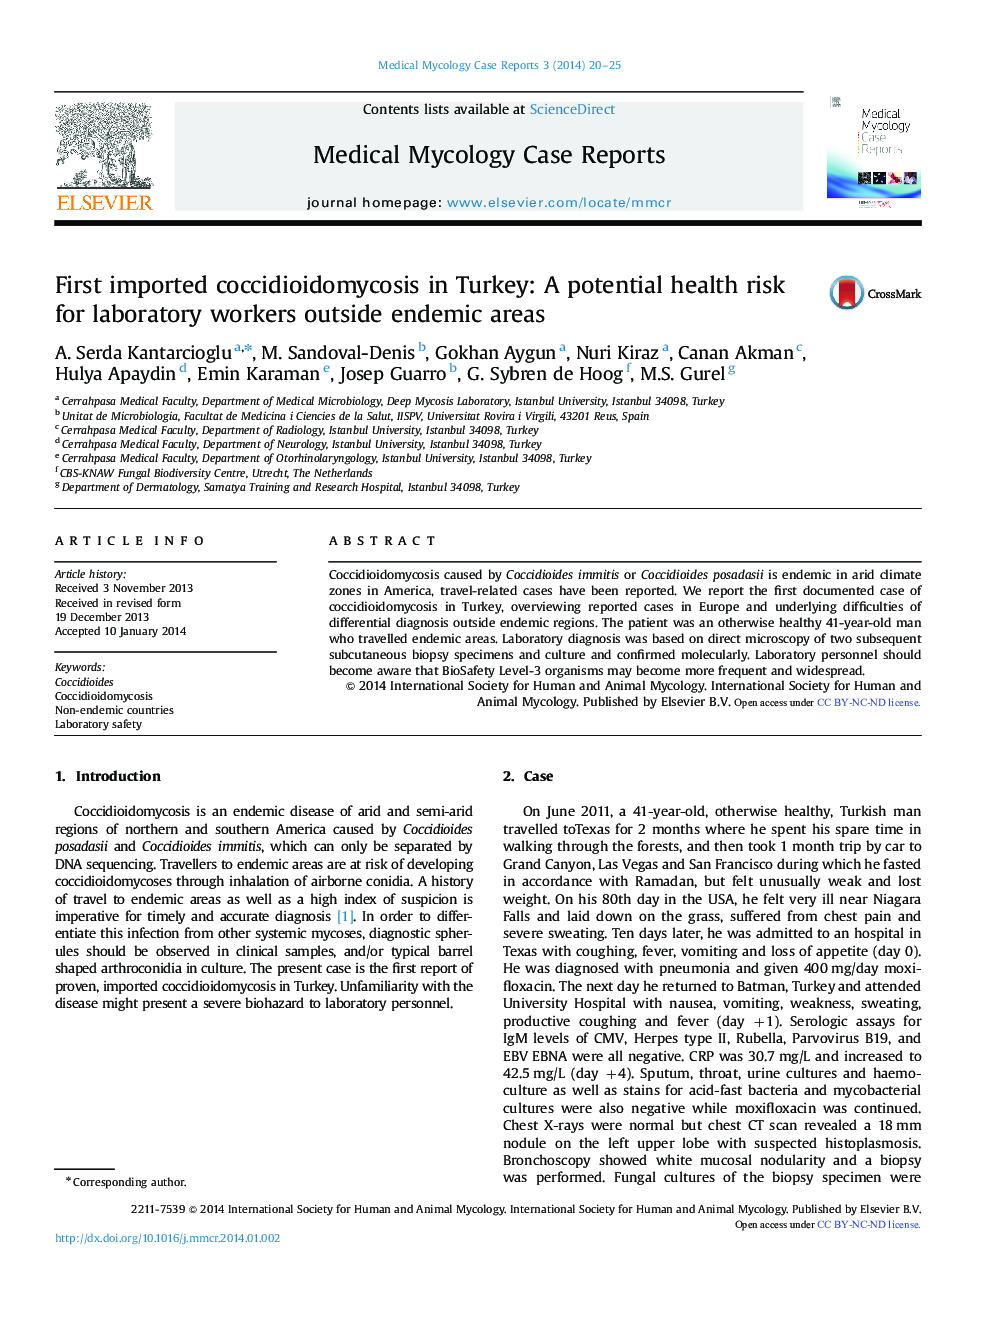 اولین کوکیدیوئیدومیکوز وارداتی در ترکیه: یک خطر بالقوه بهداشتی برای کارگران آزمایشگاهی در خارج از مناطق اندمیک 